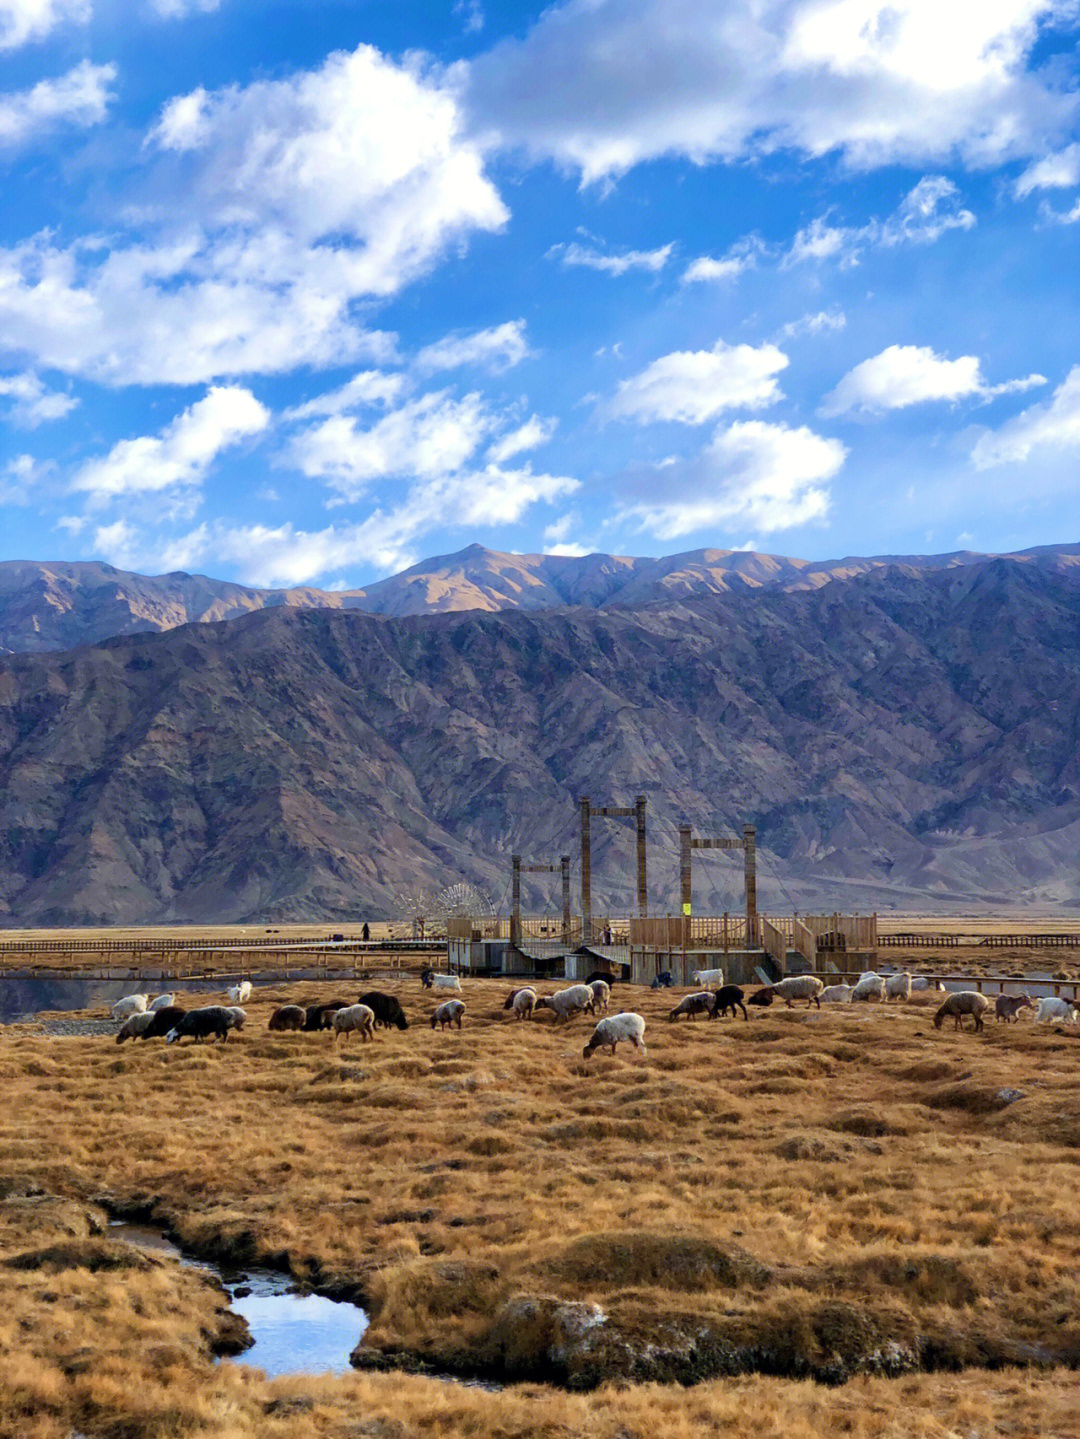 的最美的风景在路上位于新疆塔县的帕米尔高原,平均海拔在4500米以上